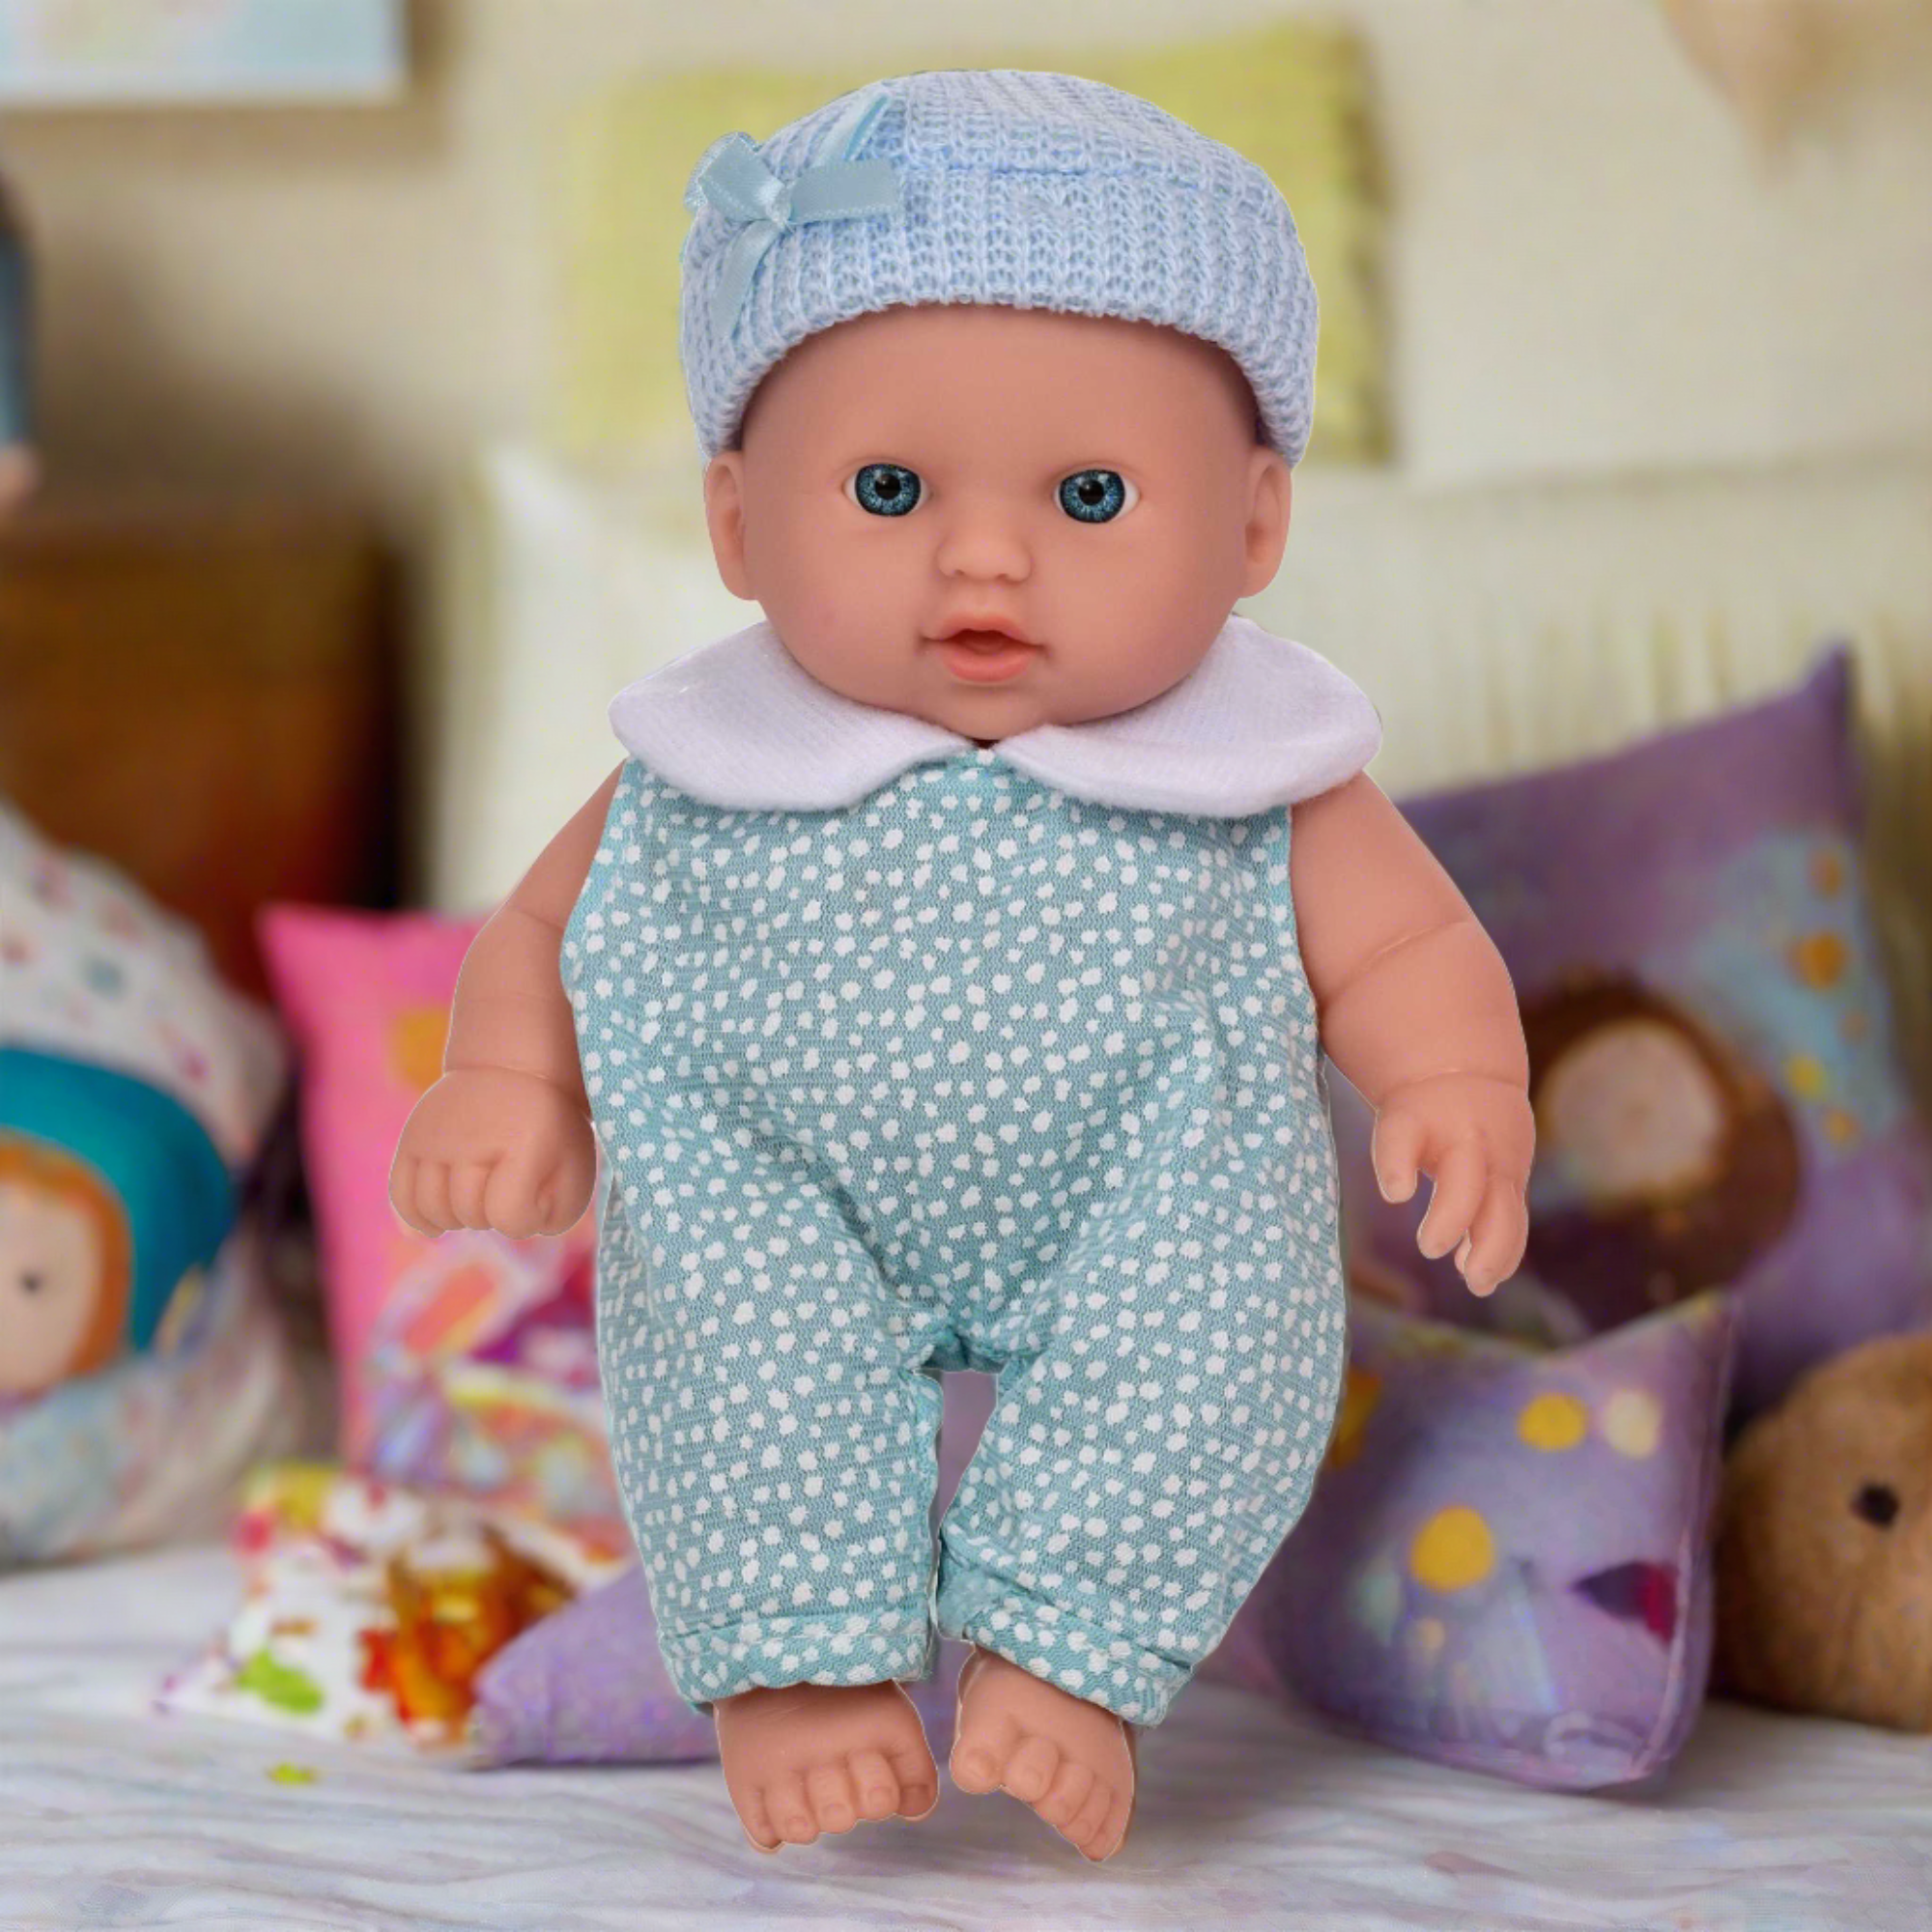 Babyboo Cutie Baby Doll - Blue